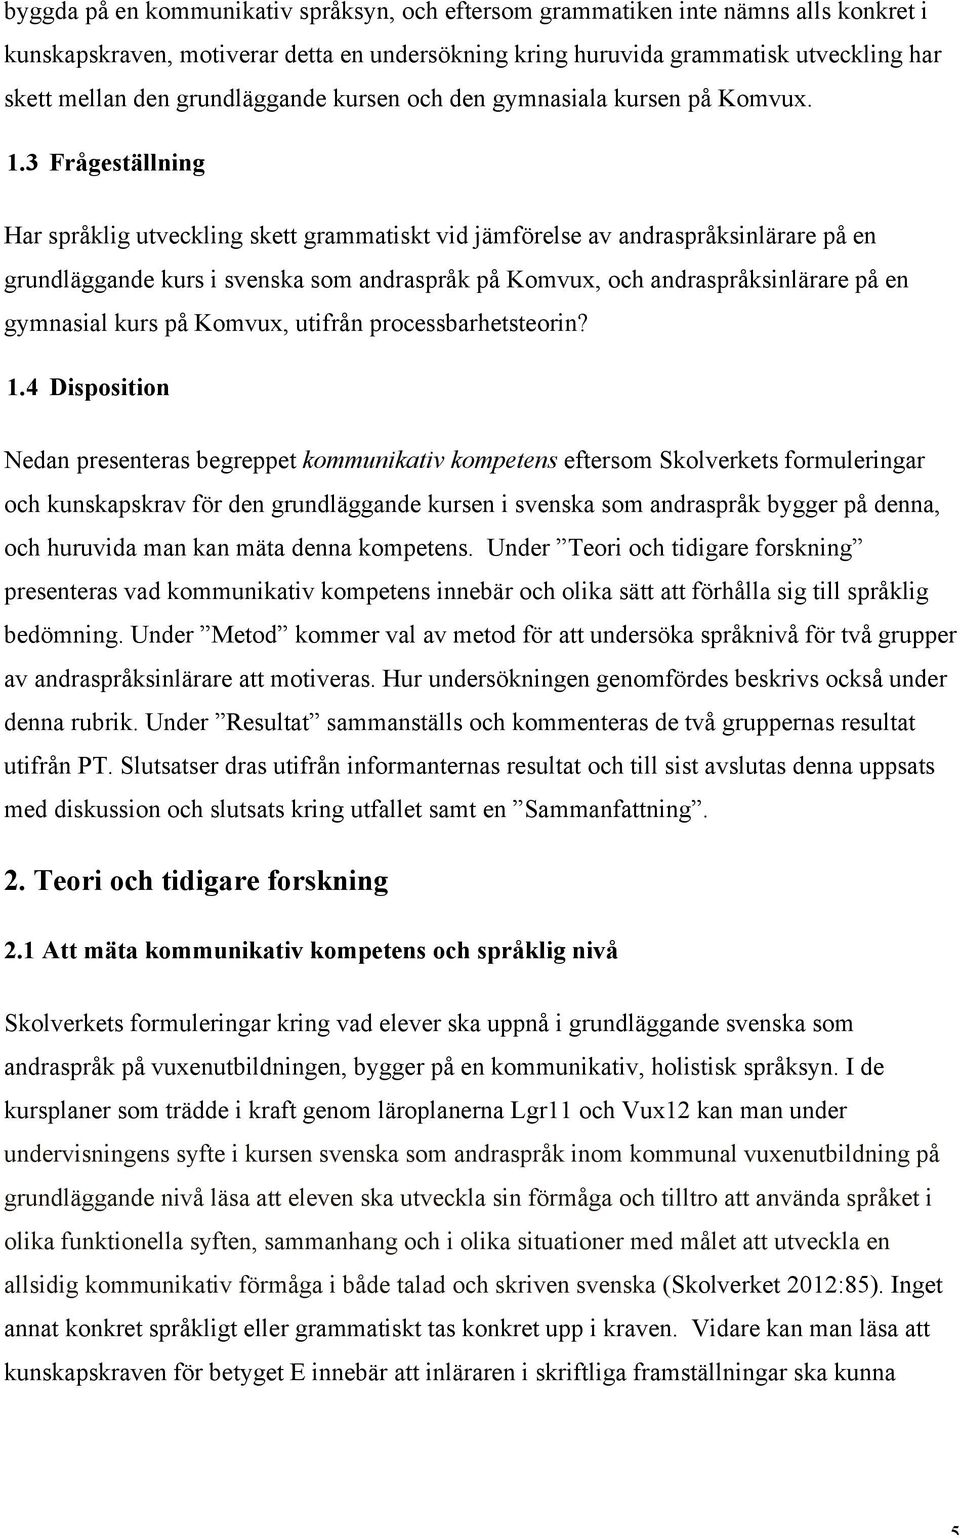 3 Frågeställning Har språklig utveckling skett grammatiskt vid jämförelse av andraspråksinlärare på en grundläggande kurs i svenska som andraspråk på Komvux, och andraspråksinlärare på en gymnasial